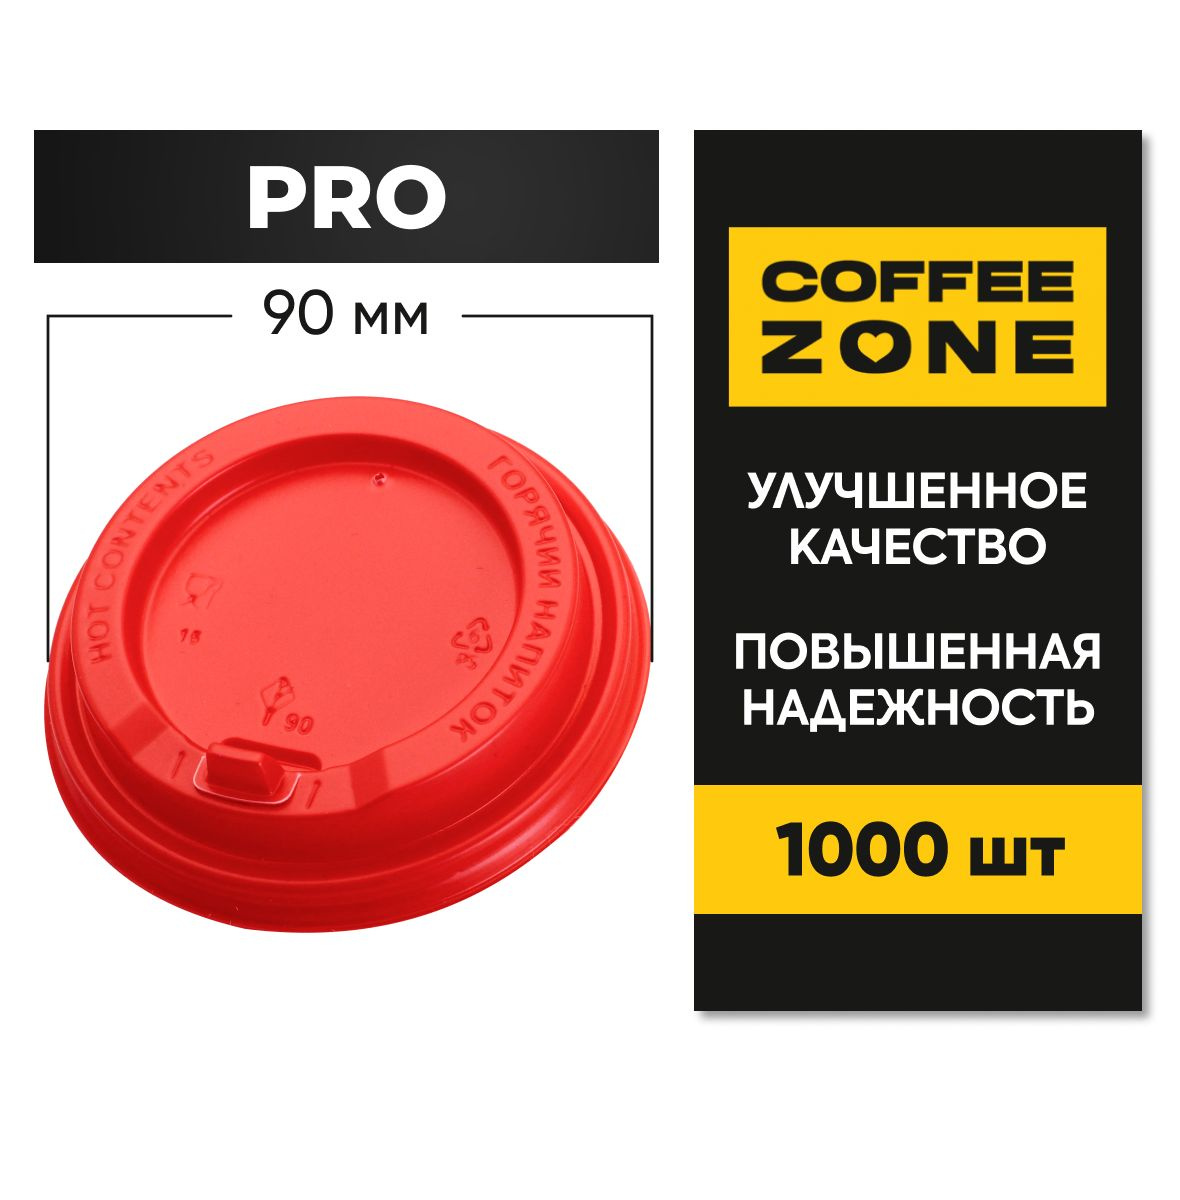  Крышки 90 мм / 1000 штук PRO Красные одноразовые c клапаном (откидным питейником) пищевые пластиковые повышенной прочности от COFFEE ZONE для стаканов 300 мл - 400 мл